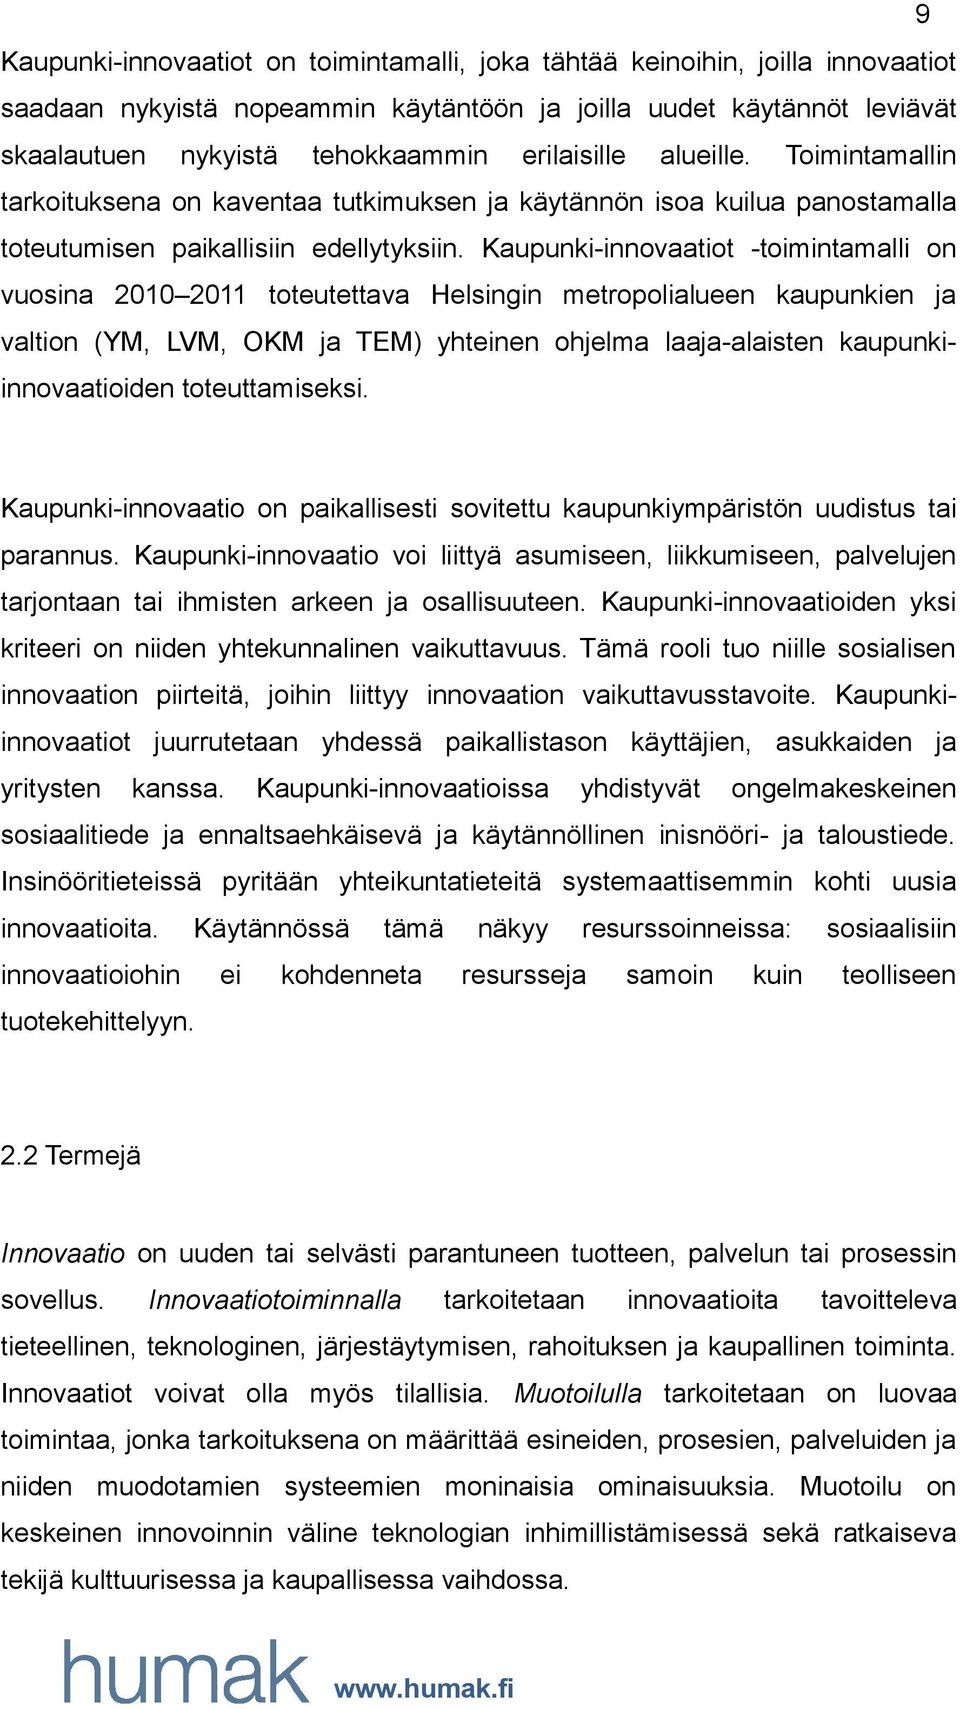 Kaupunki-innovaatiot -toimintamalli on vuosina 2010 2011 toteutettava Helsingin metropolialueen kaupunkien ja valtion (YM, LVM, OKM ja TEM) yhteinen ohjelma laaja-alaisten kaupunkiinnovaatioiden